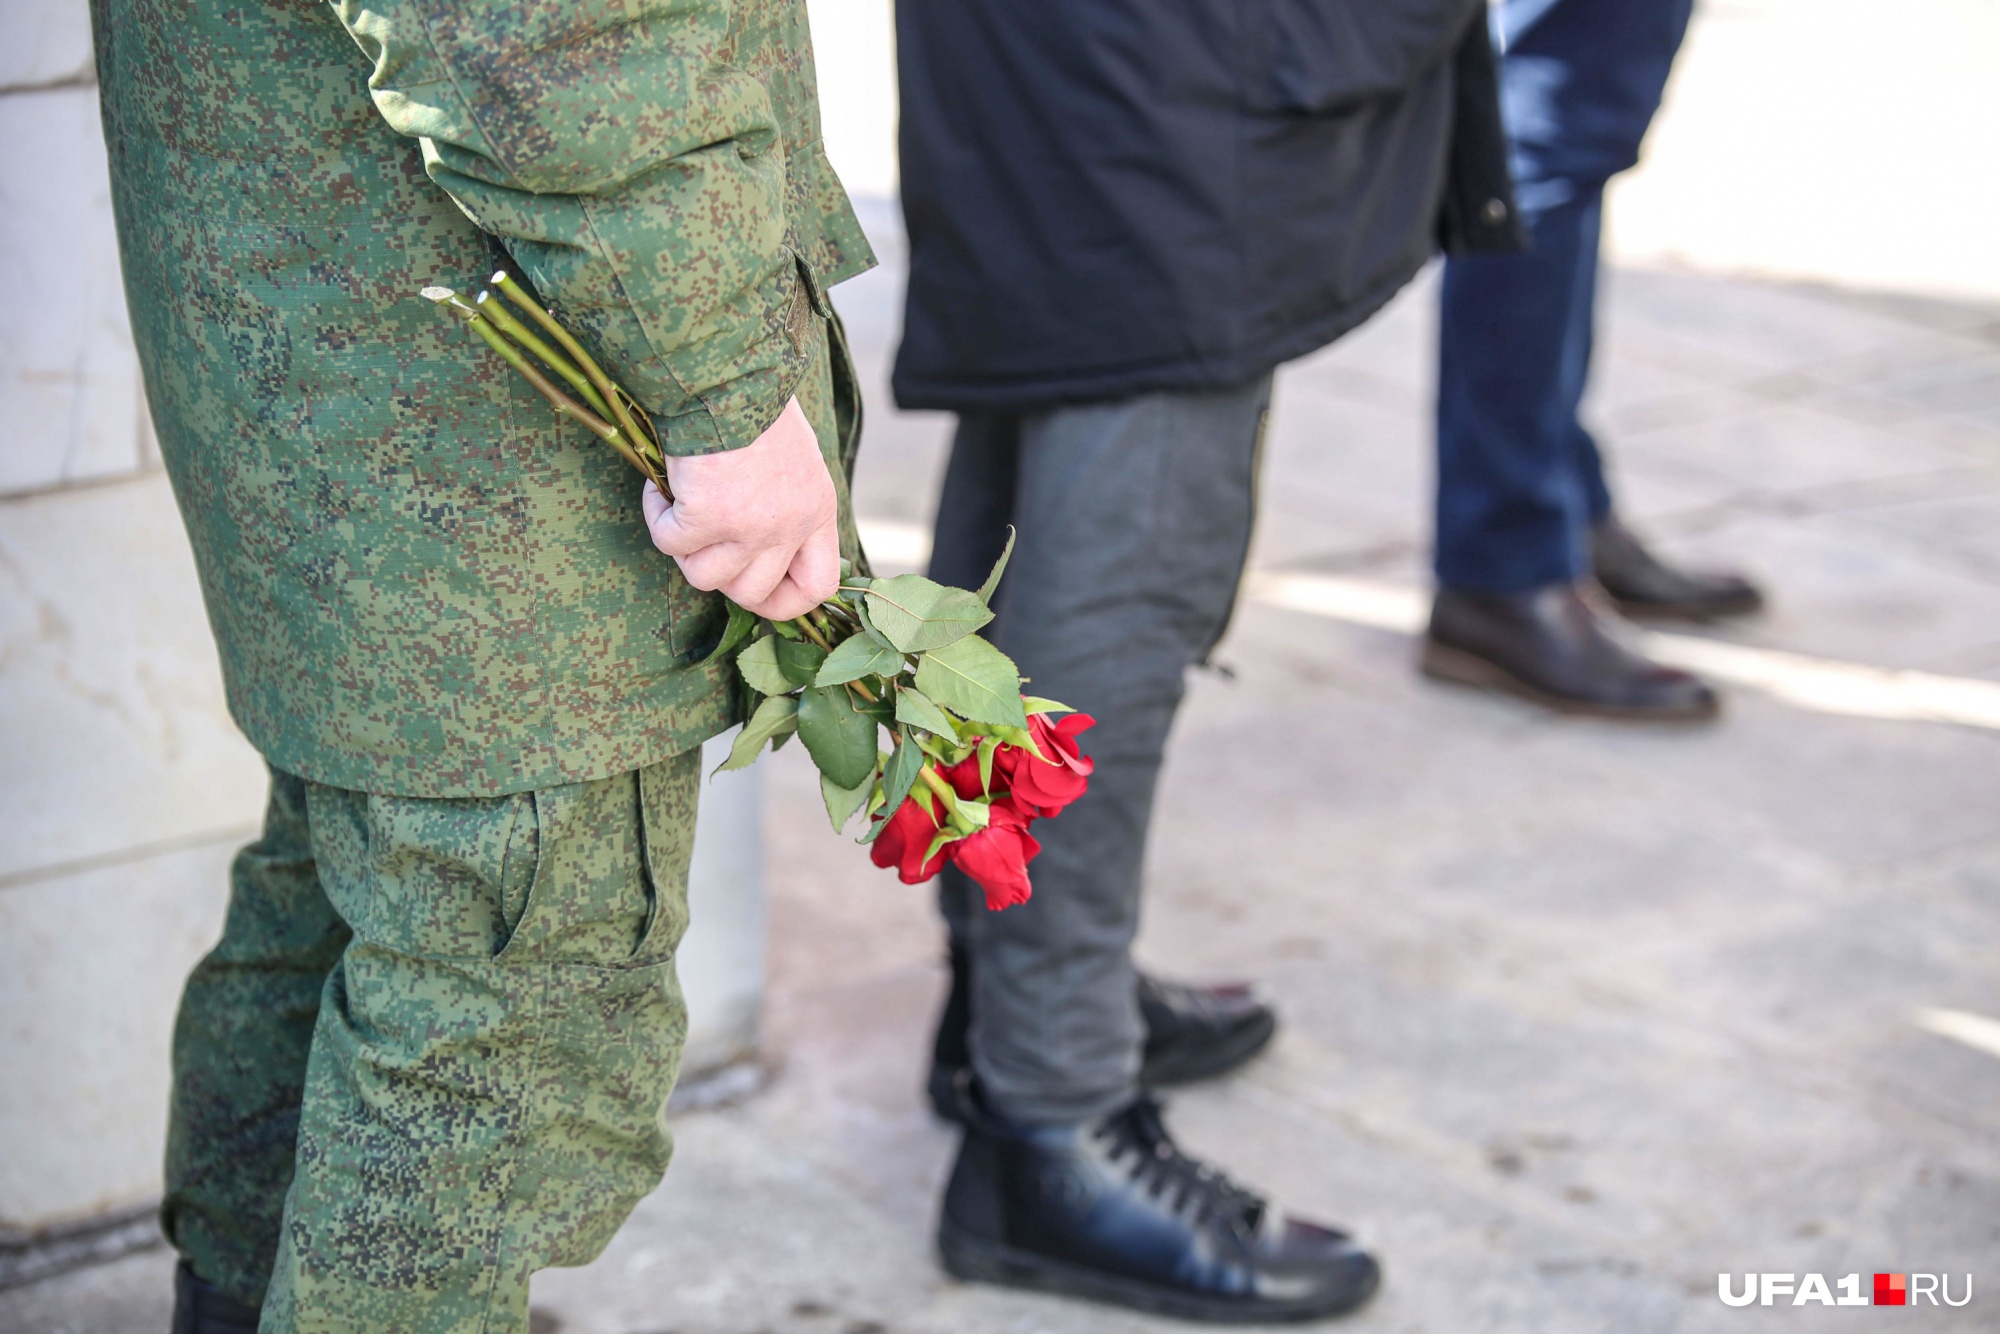 Останки солдата нашли в Ленинградской области и привезли в Забайкалье